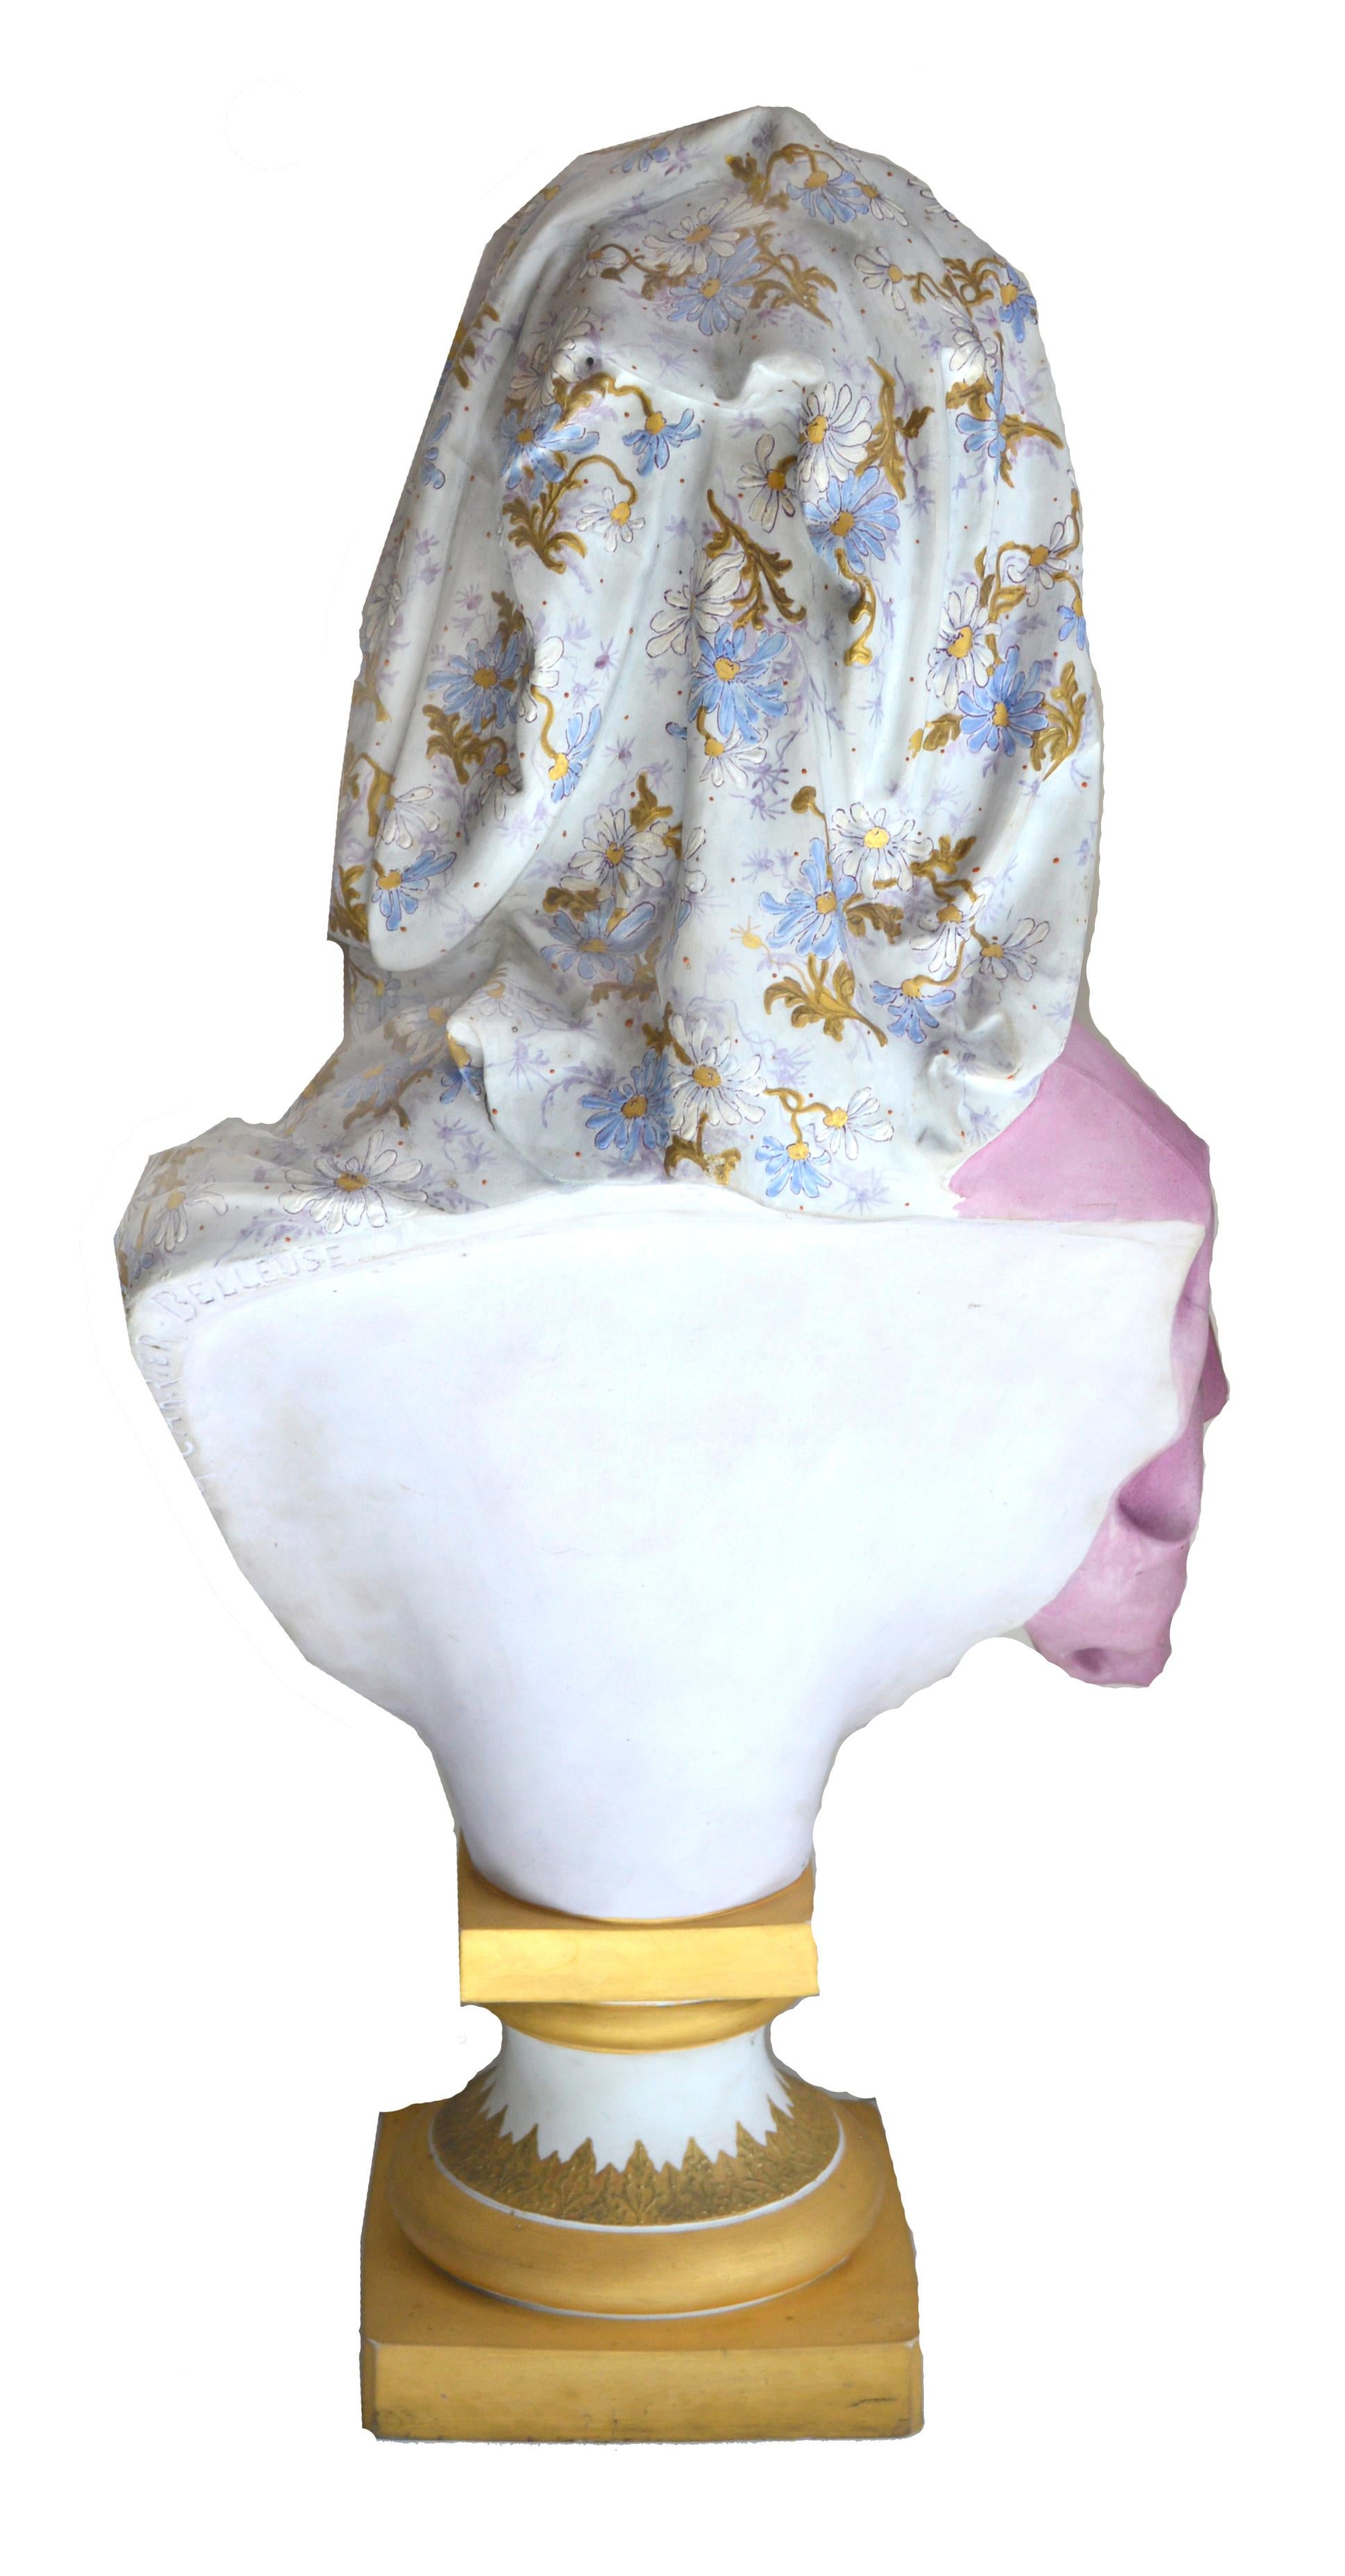 Albert-Ernest Carrier Belleuse Biskuitchrome persische Jungfrau von Albert-Ernest (Grau), Figurative Sculpture, von Albert-Ernest Carrier-Belleuse